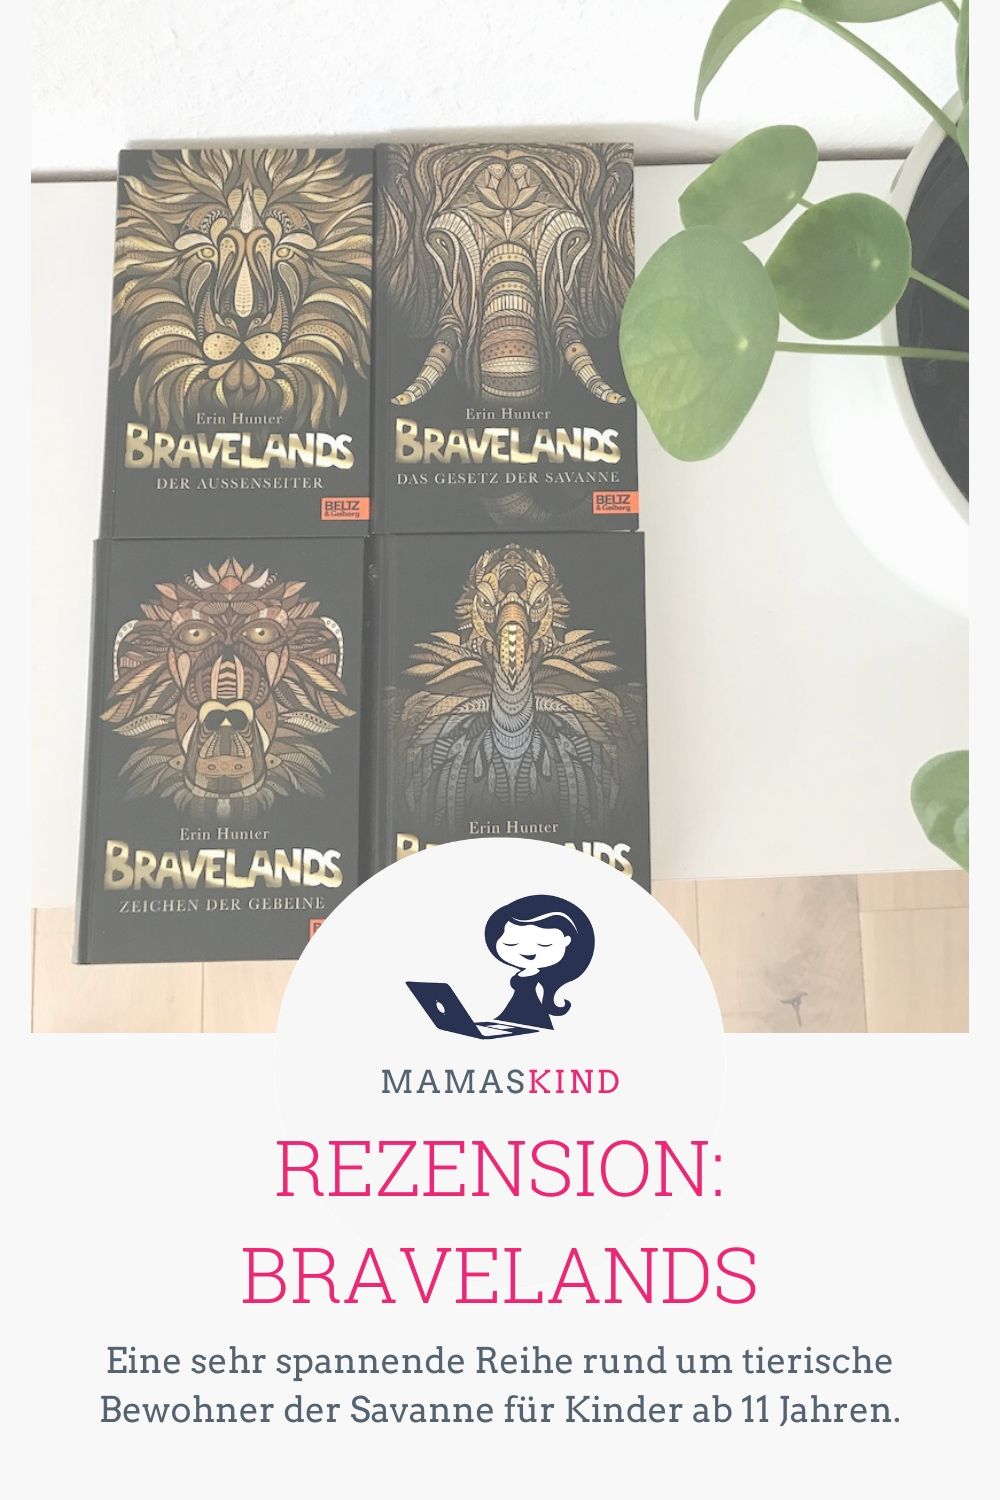 Die Bravelands-Bücher erzählen die Geschichten einzelner Savannenbewohner rund um Intrigen, Macht und den Tod. - Mehr zu den Rezensionen der Bände 1 - 4 gibt es auf Mamaskind.de